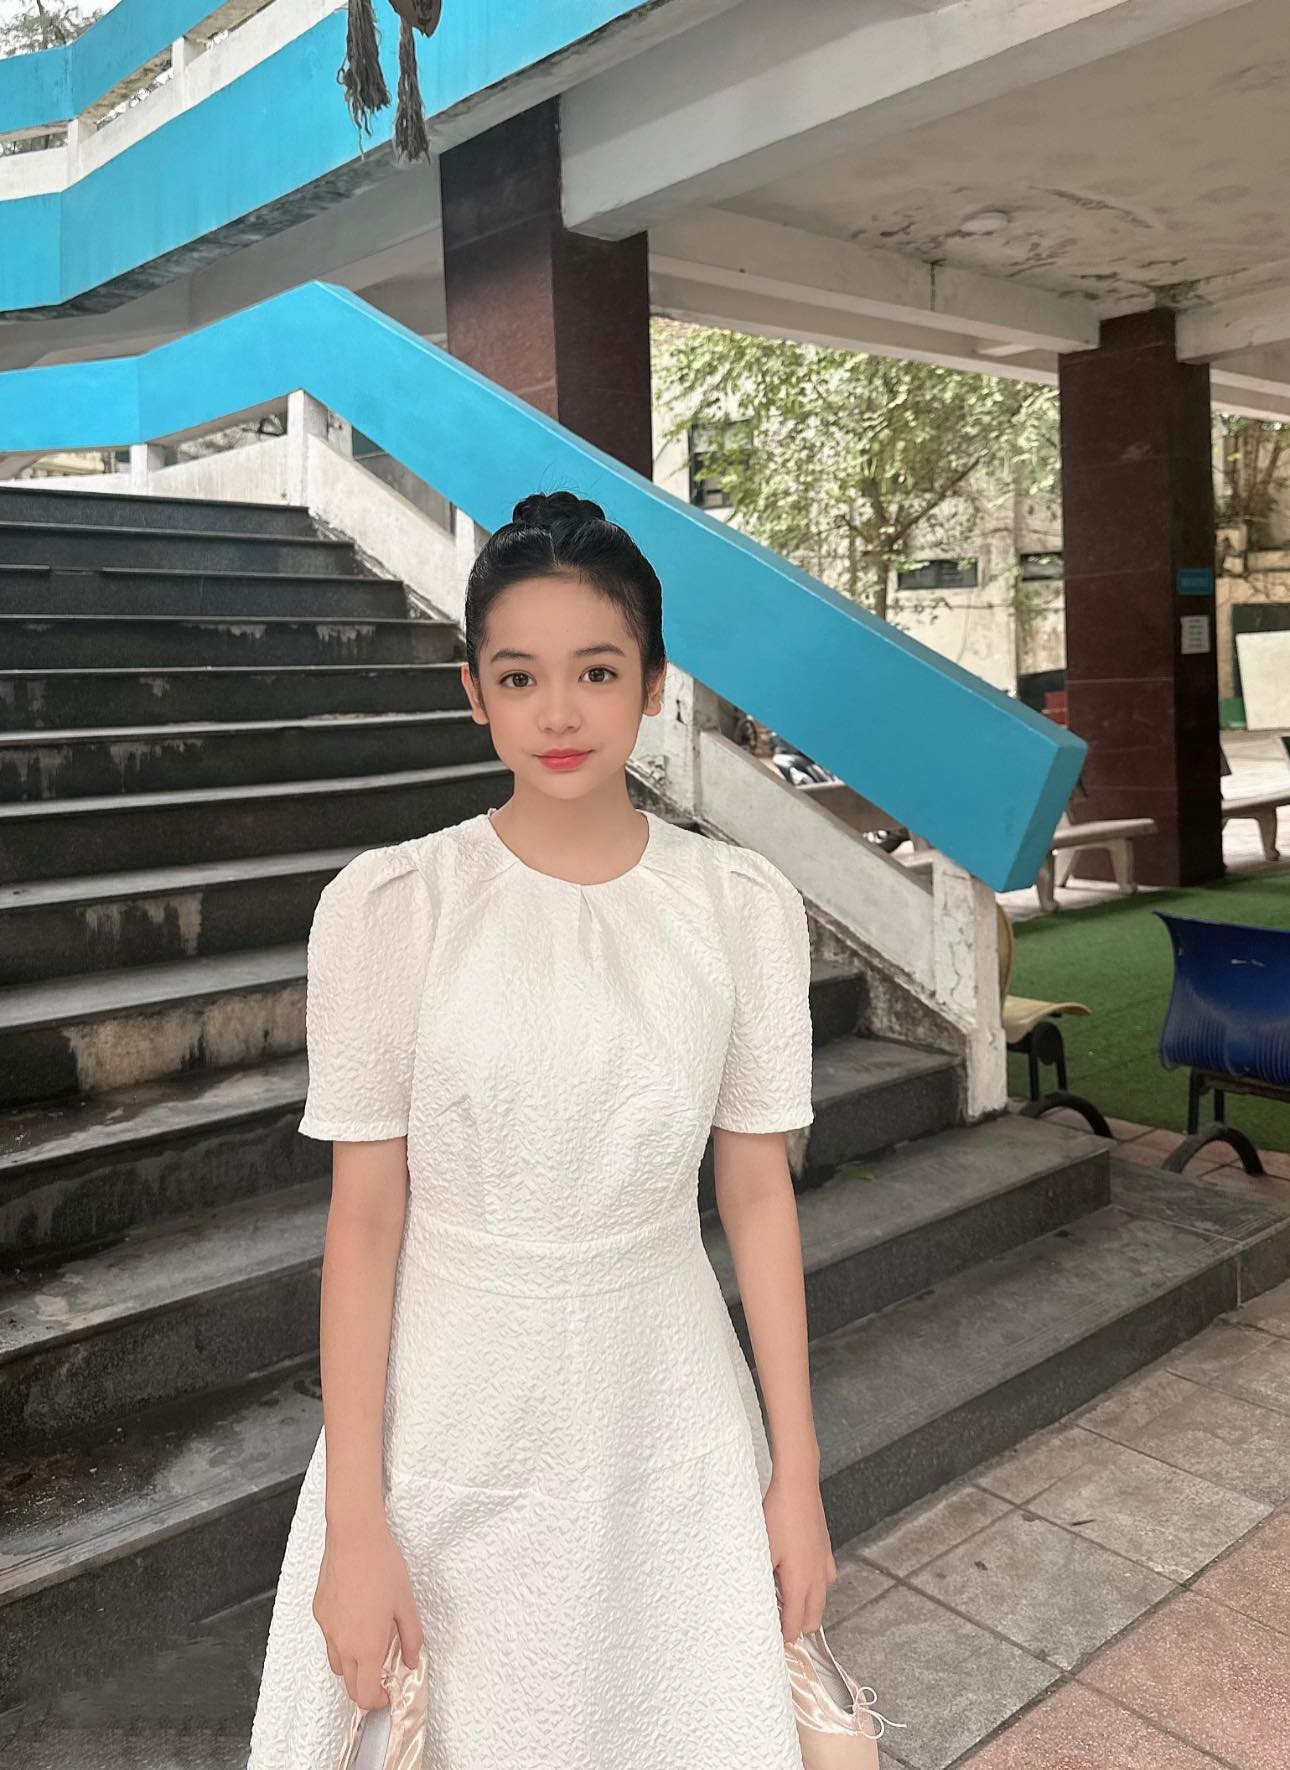 Con gái Việt Anh” đang được dự đoán sẽ trở thành đại mỹ nhân trong tương lai.